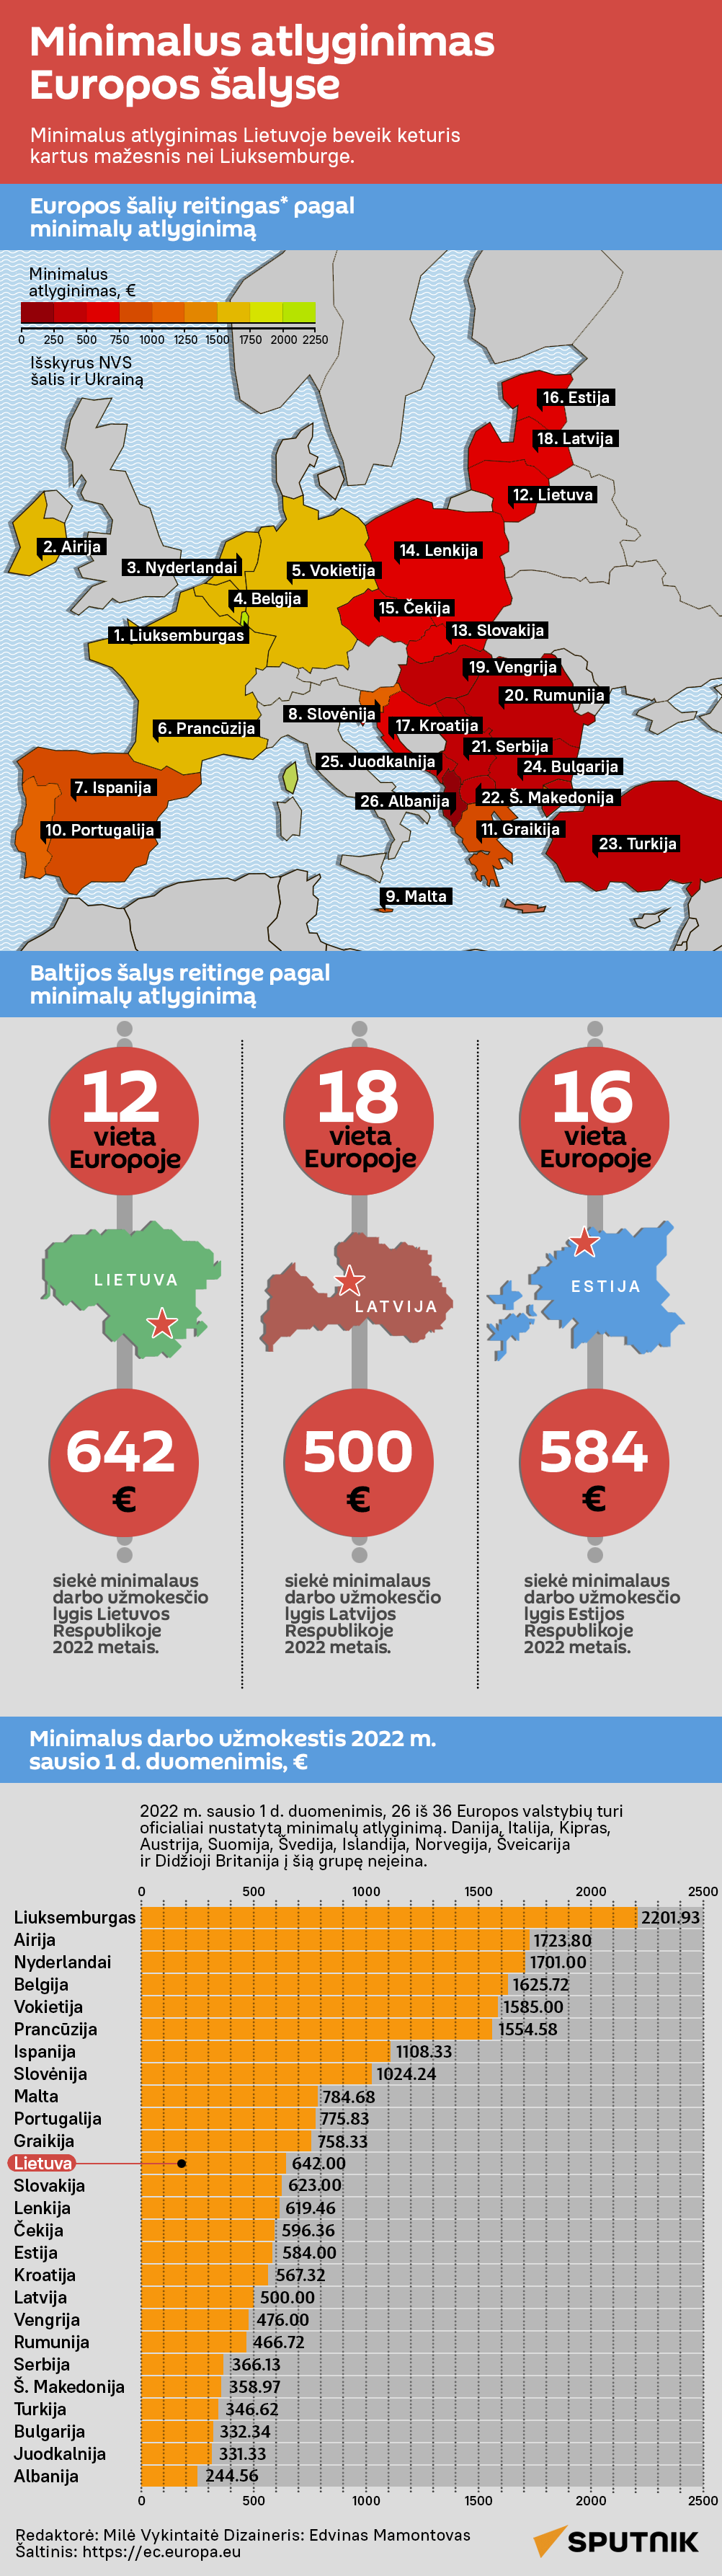 Minimalus atlyginimas Europos šalyse - Sputnik Lietuva